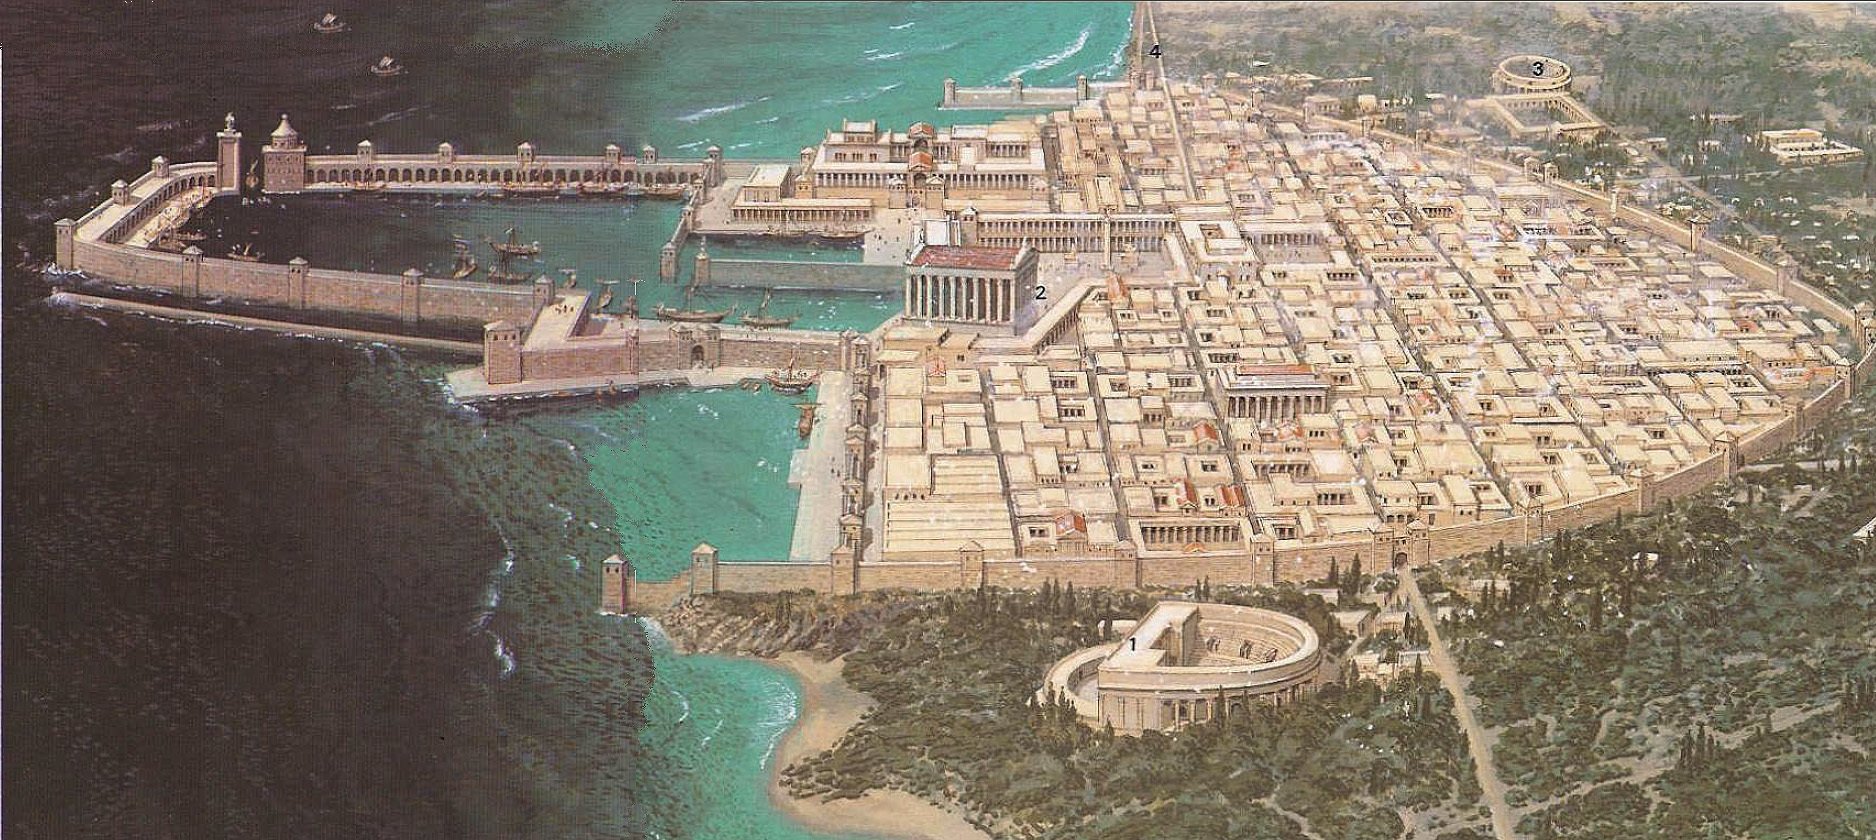 Александрия древний город. Кейсария дворец Ирода. Порт Кейсария древний. Римский амфитеатр в Александрии египетской.